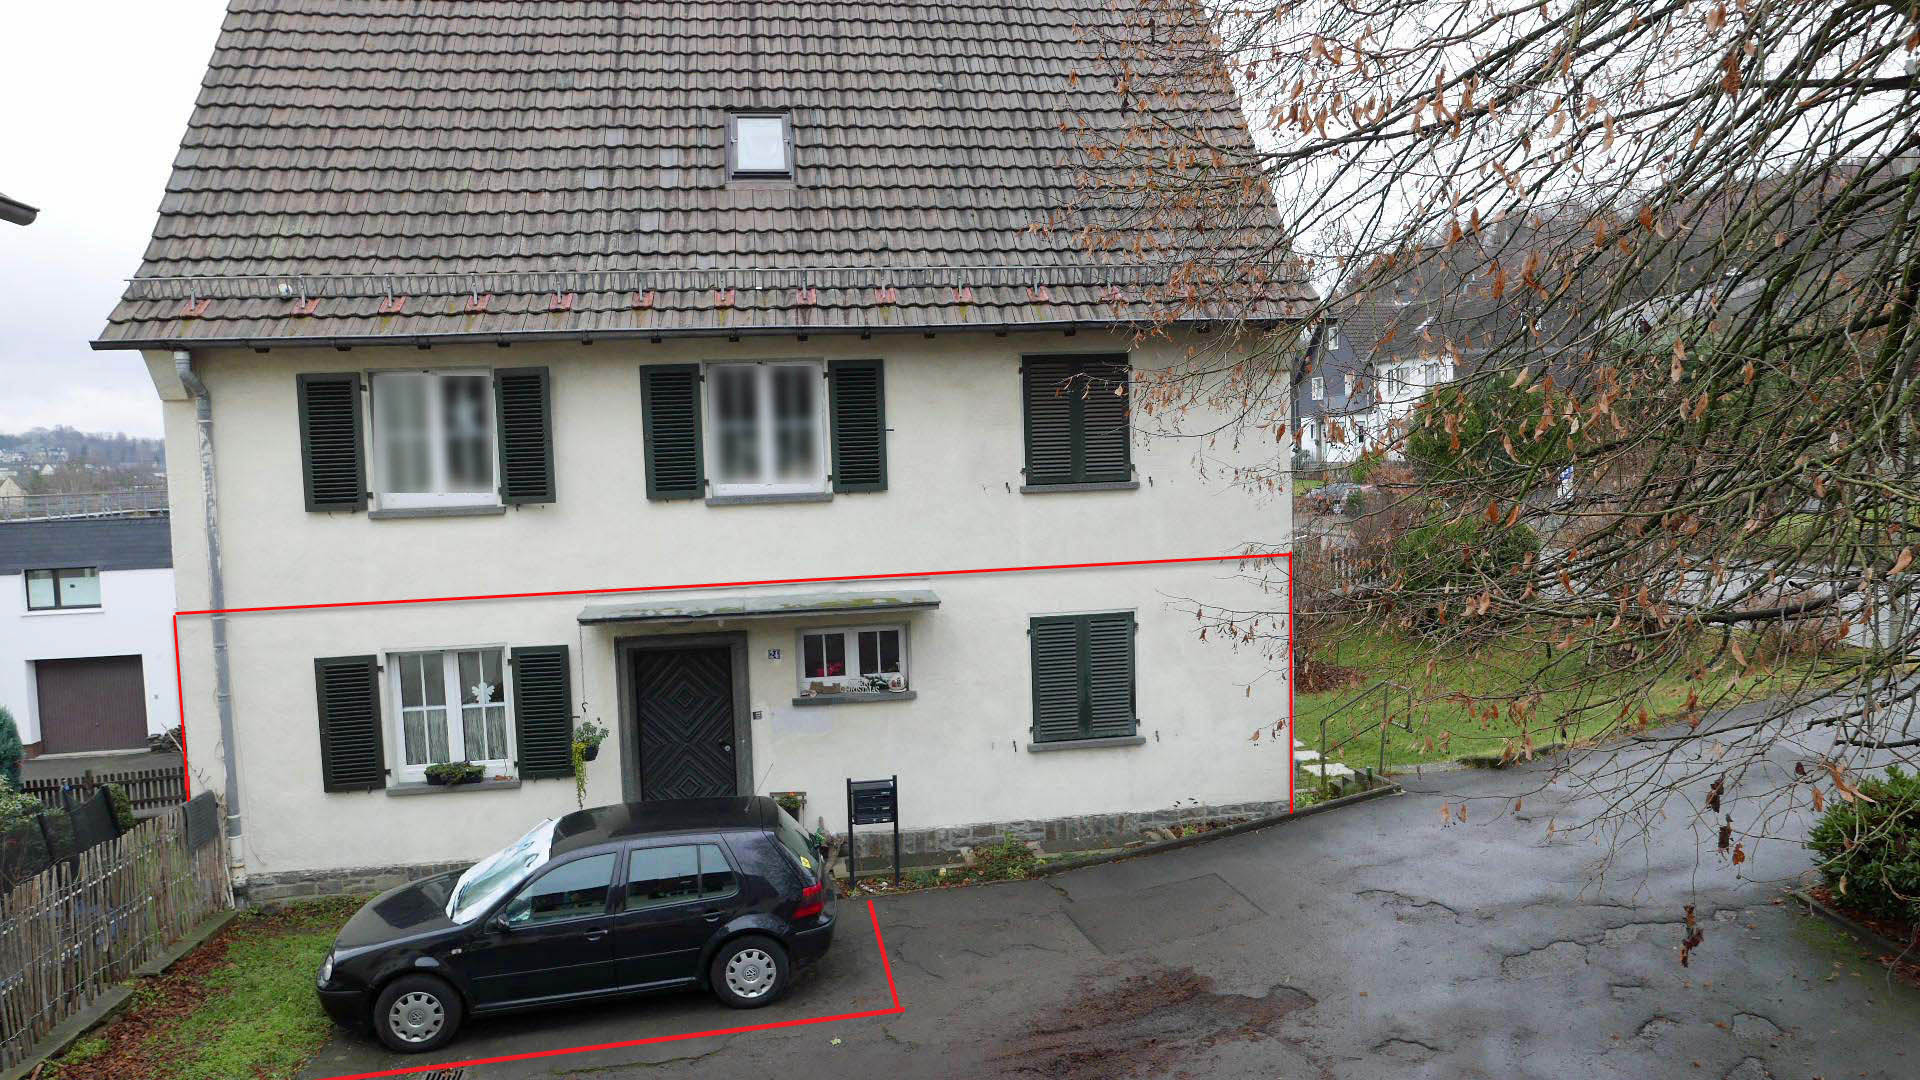 Gummersbach-Karlskamp: Helle, ebenerdige Wohnung mit Parkplatz, 3 Wohnungen im Haus: im EG, OG und DG